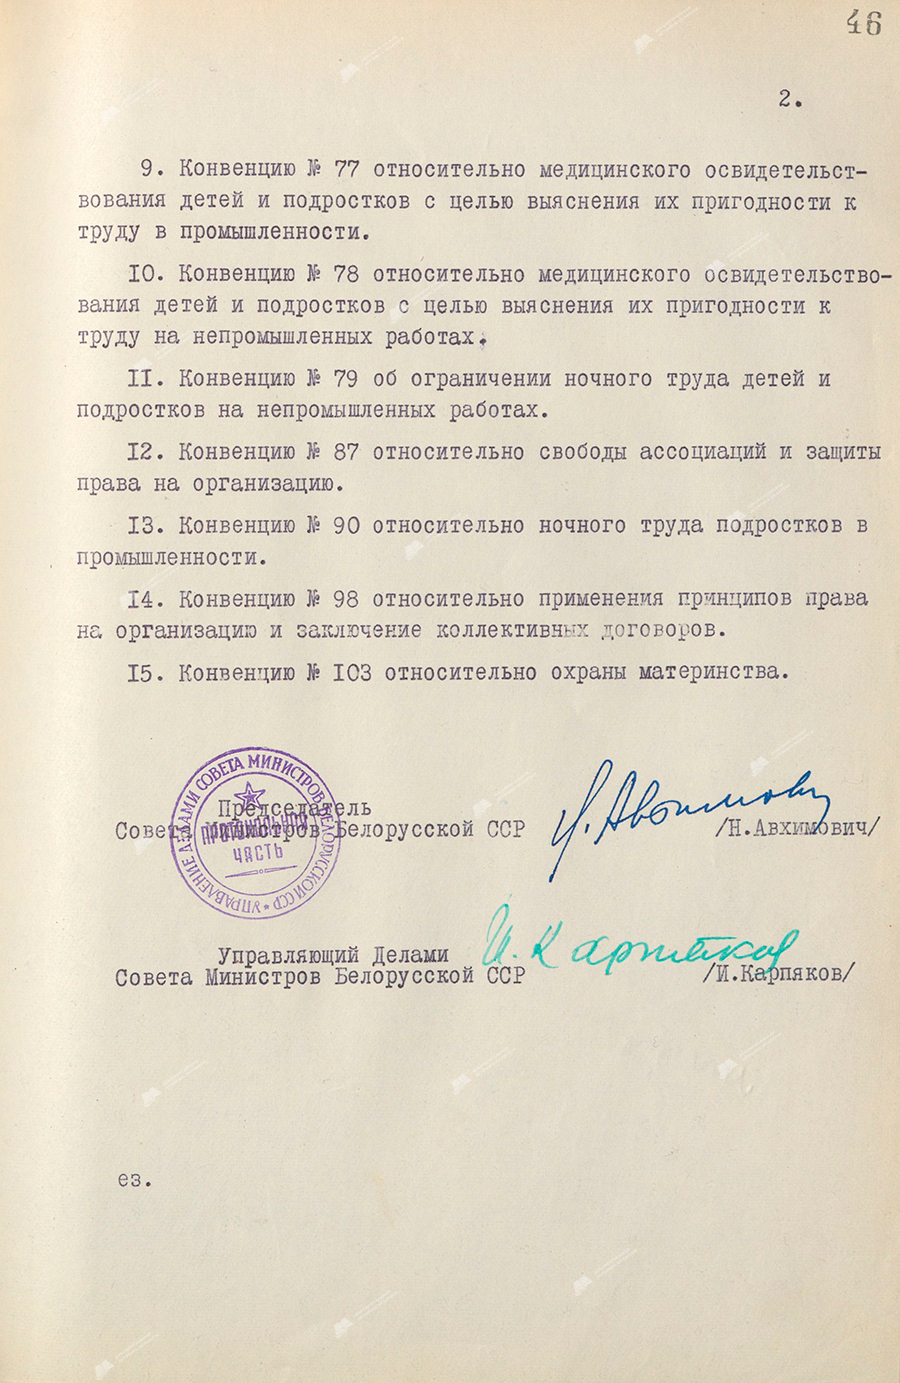 Beschluss Nr. 433 des Ministerrats der Weißrussischen SSR «Über die Genehmigung der Übereinkommen der Internationalen Arbeitsorganisation (ILO)»-стр. 1